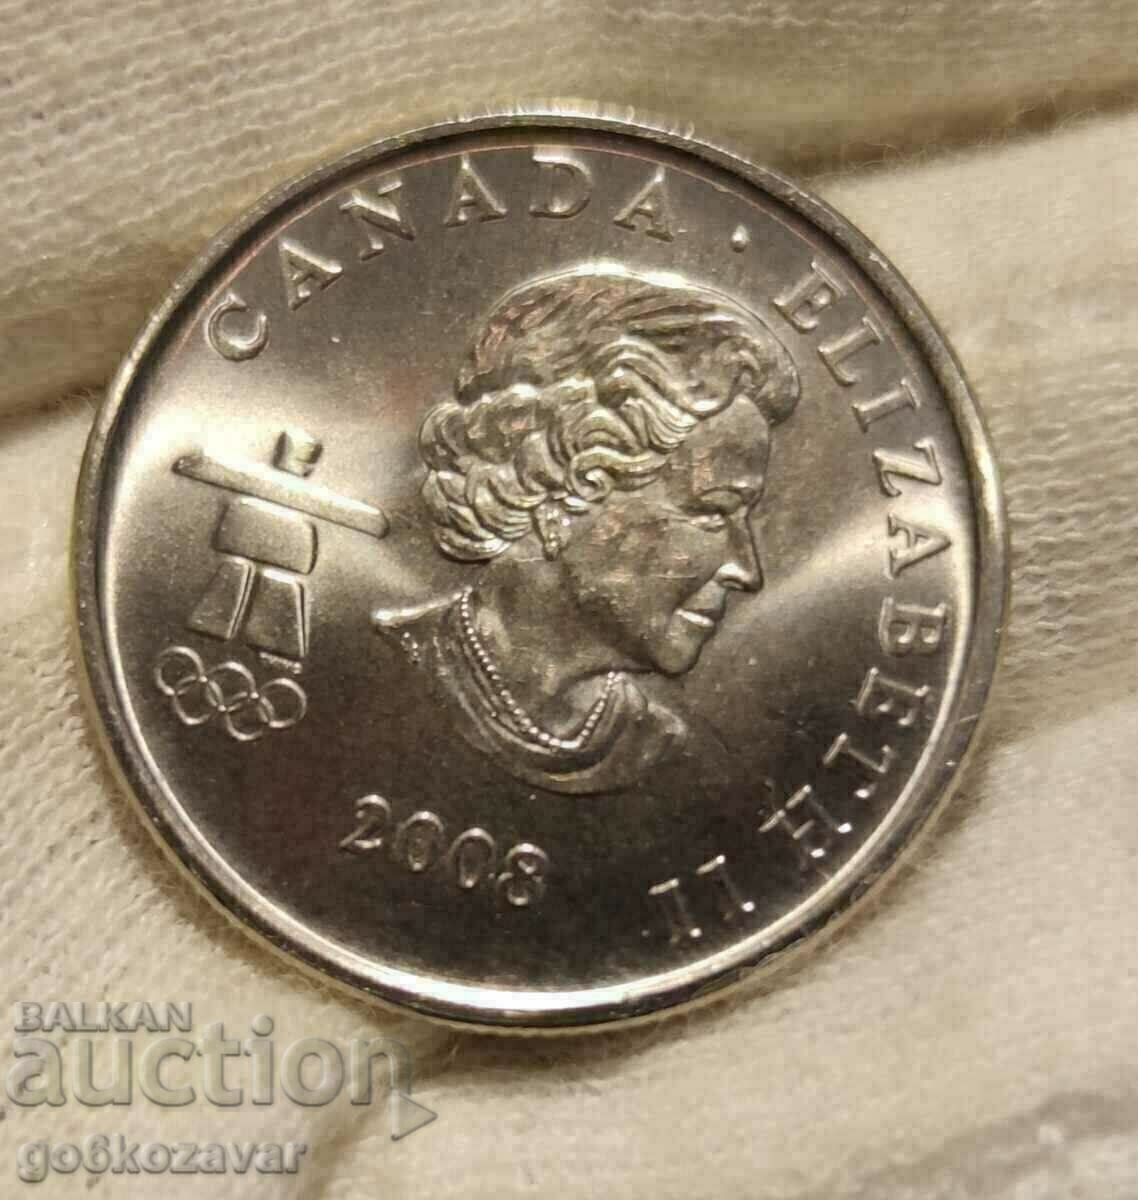 Canada 25 cents 2008 Winter Olympics!